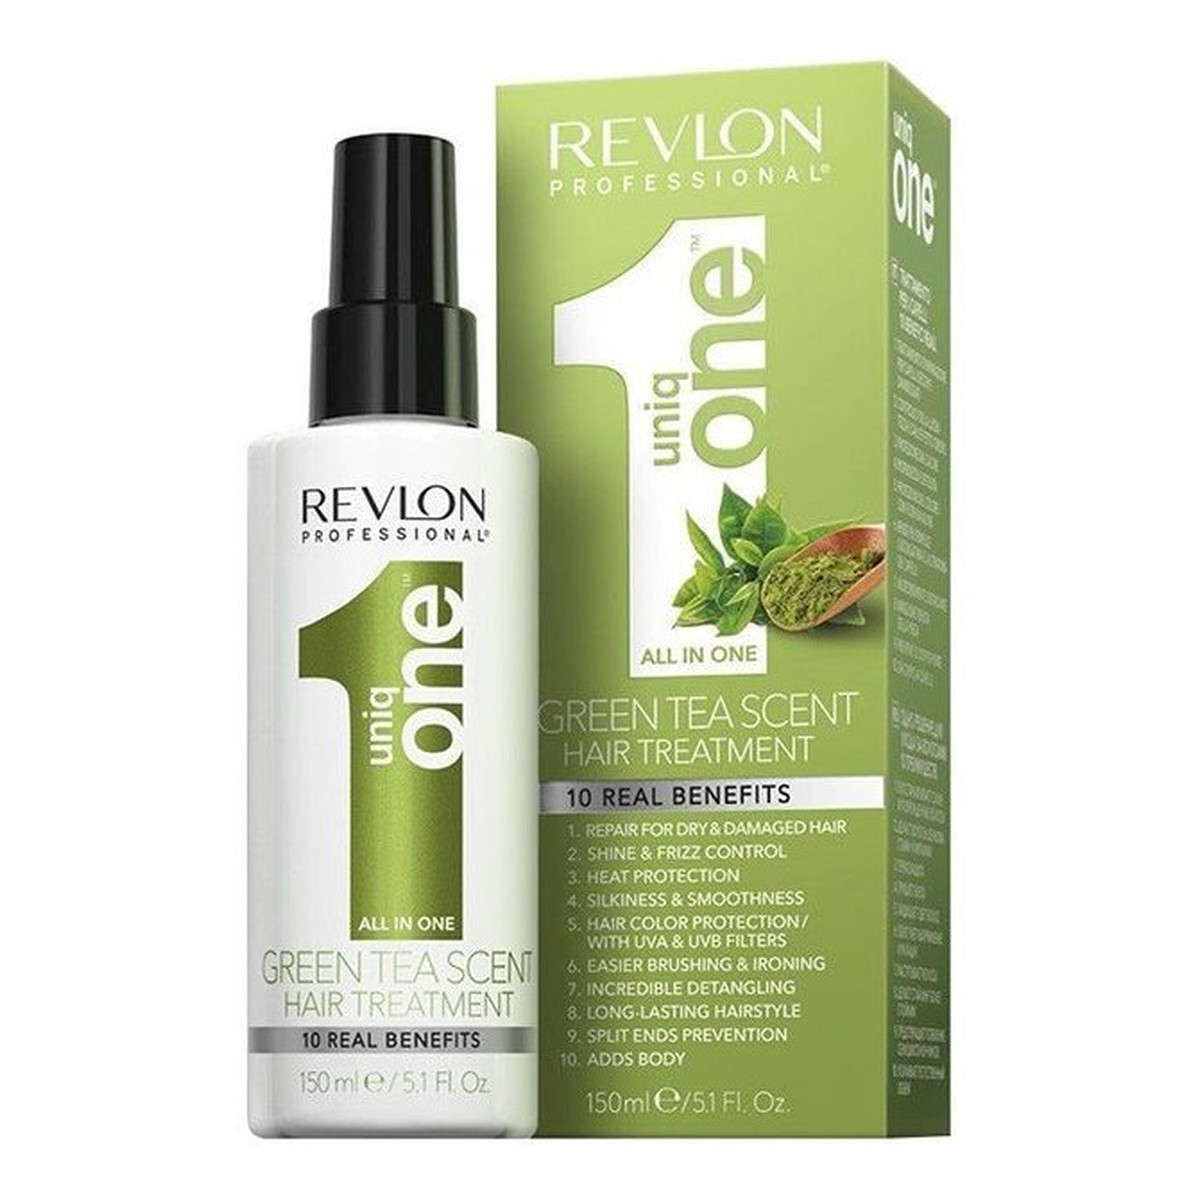 Revlon Uniq One Green Tea odżywka do włosów w sprayu 150ml